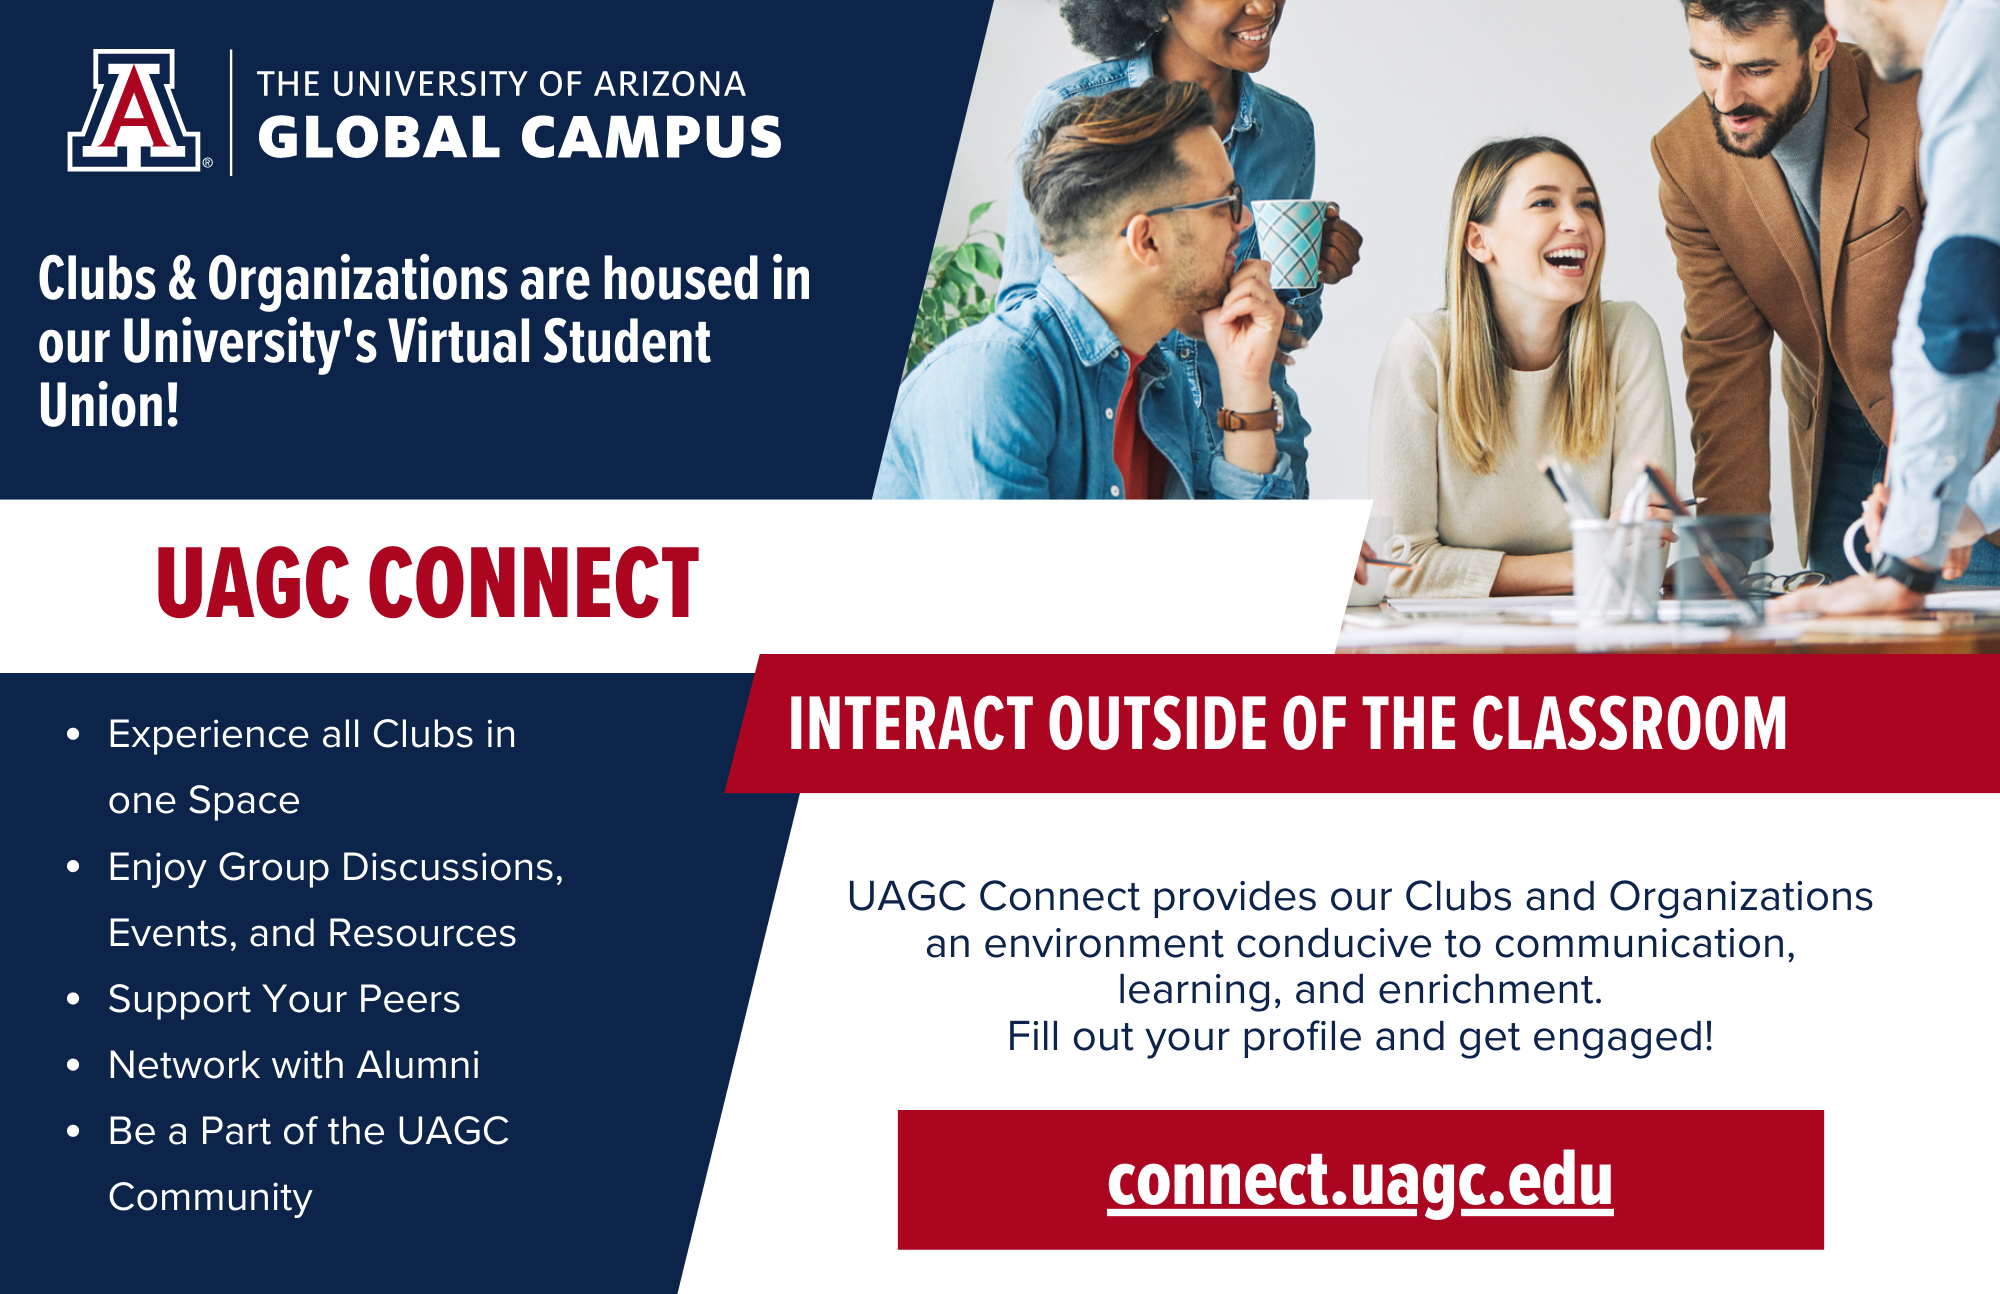 Connect.UAGC.edu